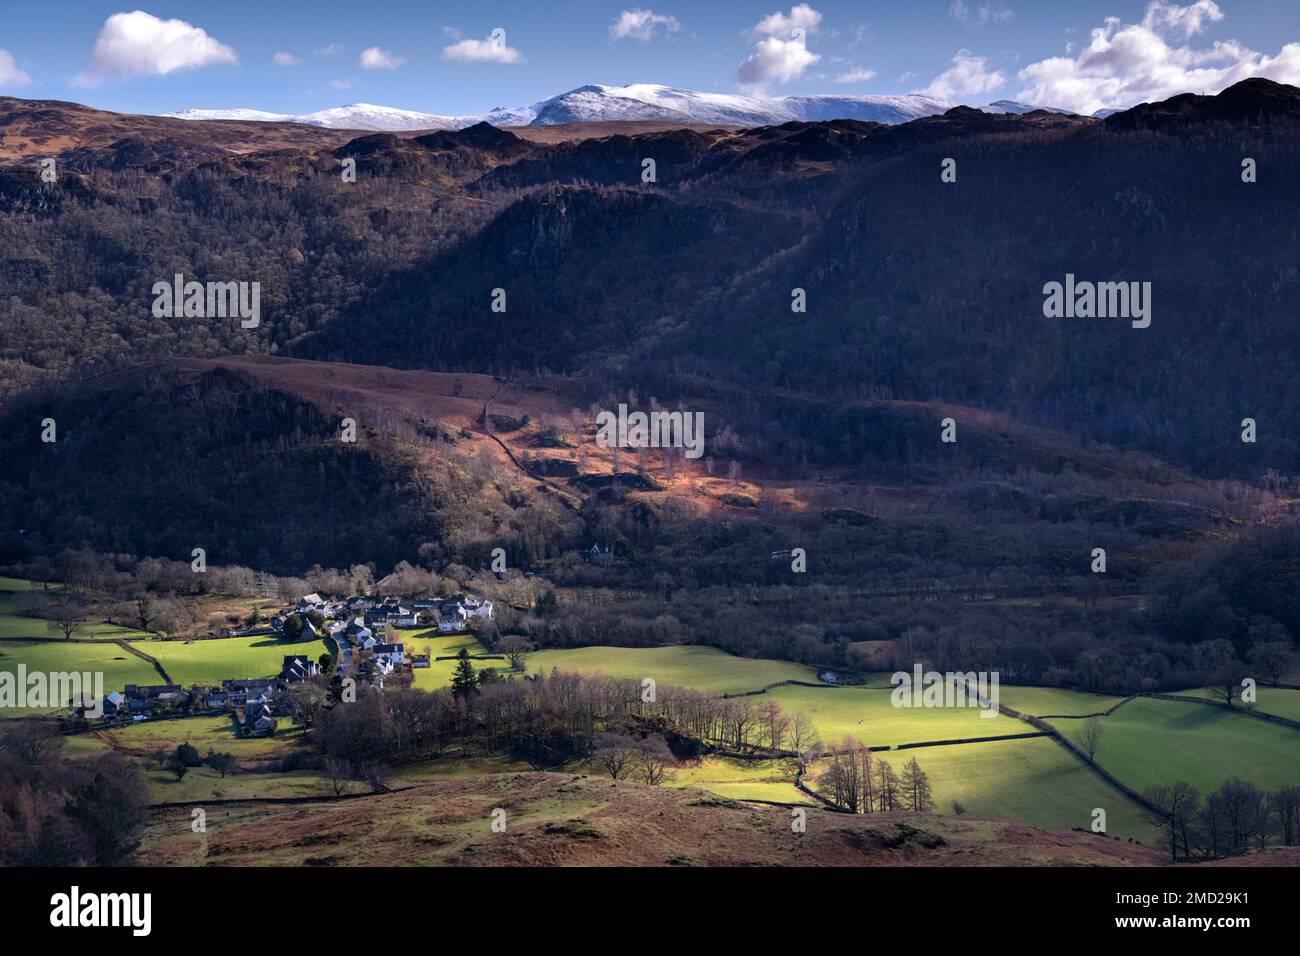 Village de Grange et la vallée de Borrowdale adossée aux Watendlath Fells et Helvellyn Range, Lake District National Park, Cumbria, Angleterre, Royaume-Uni Banque D'Images